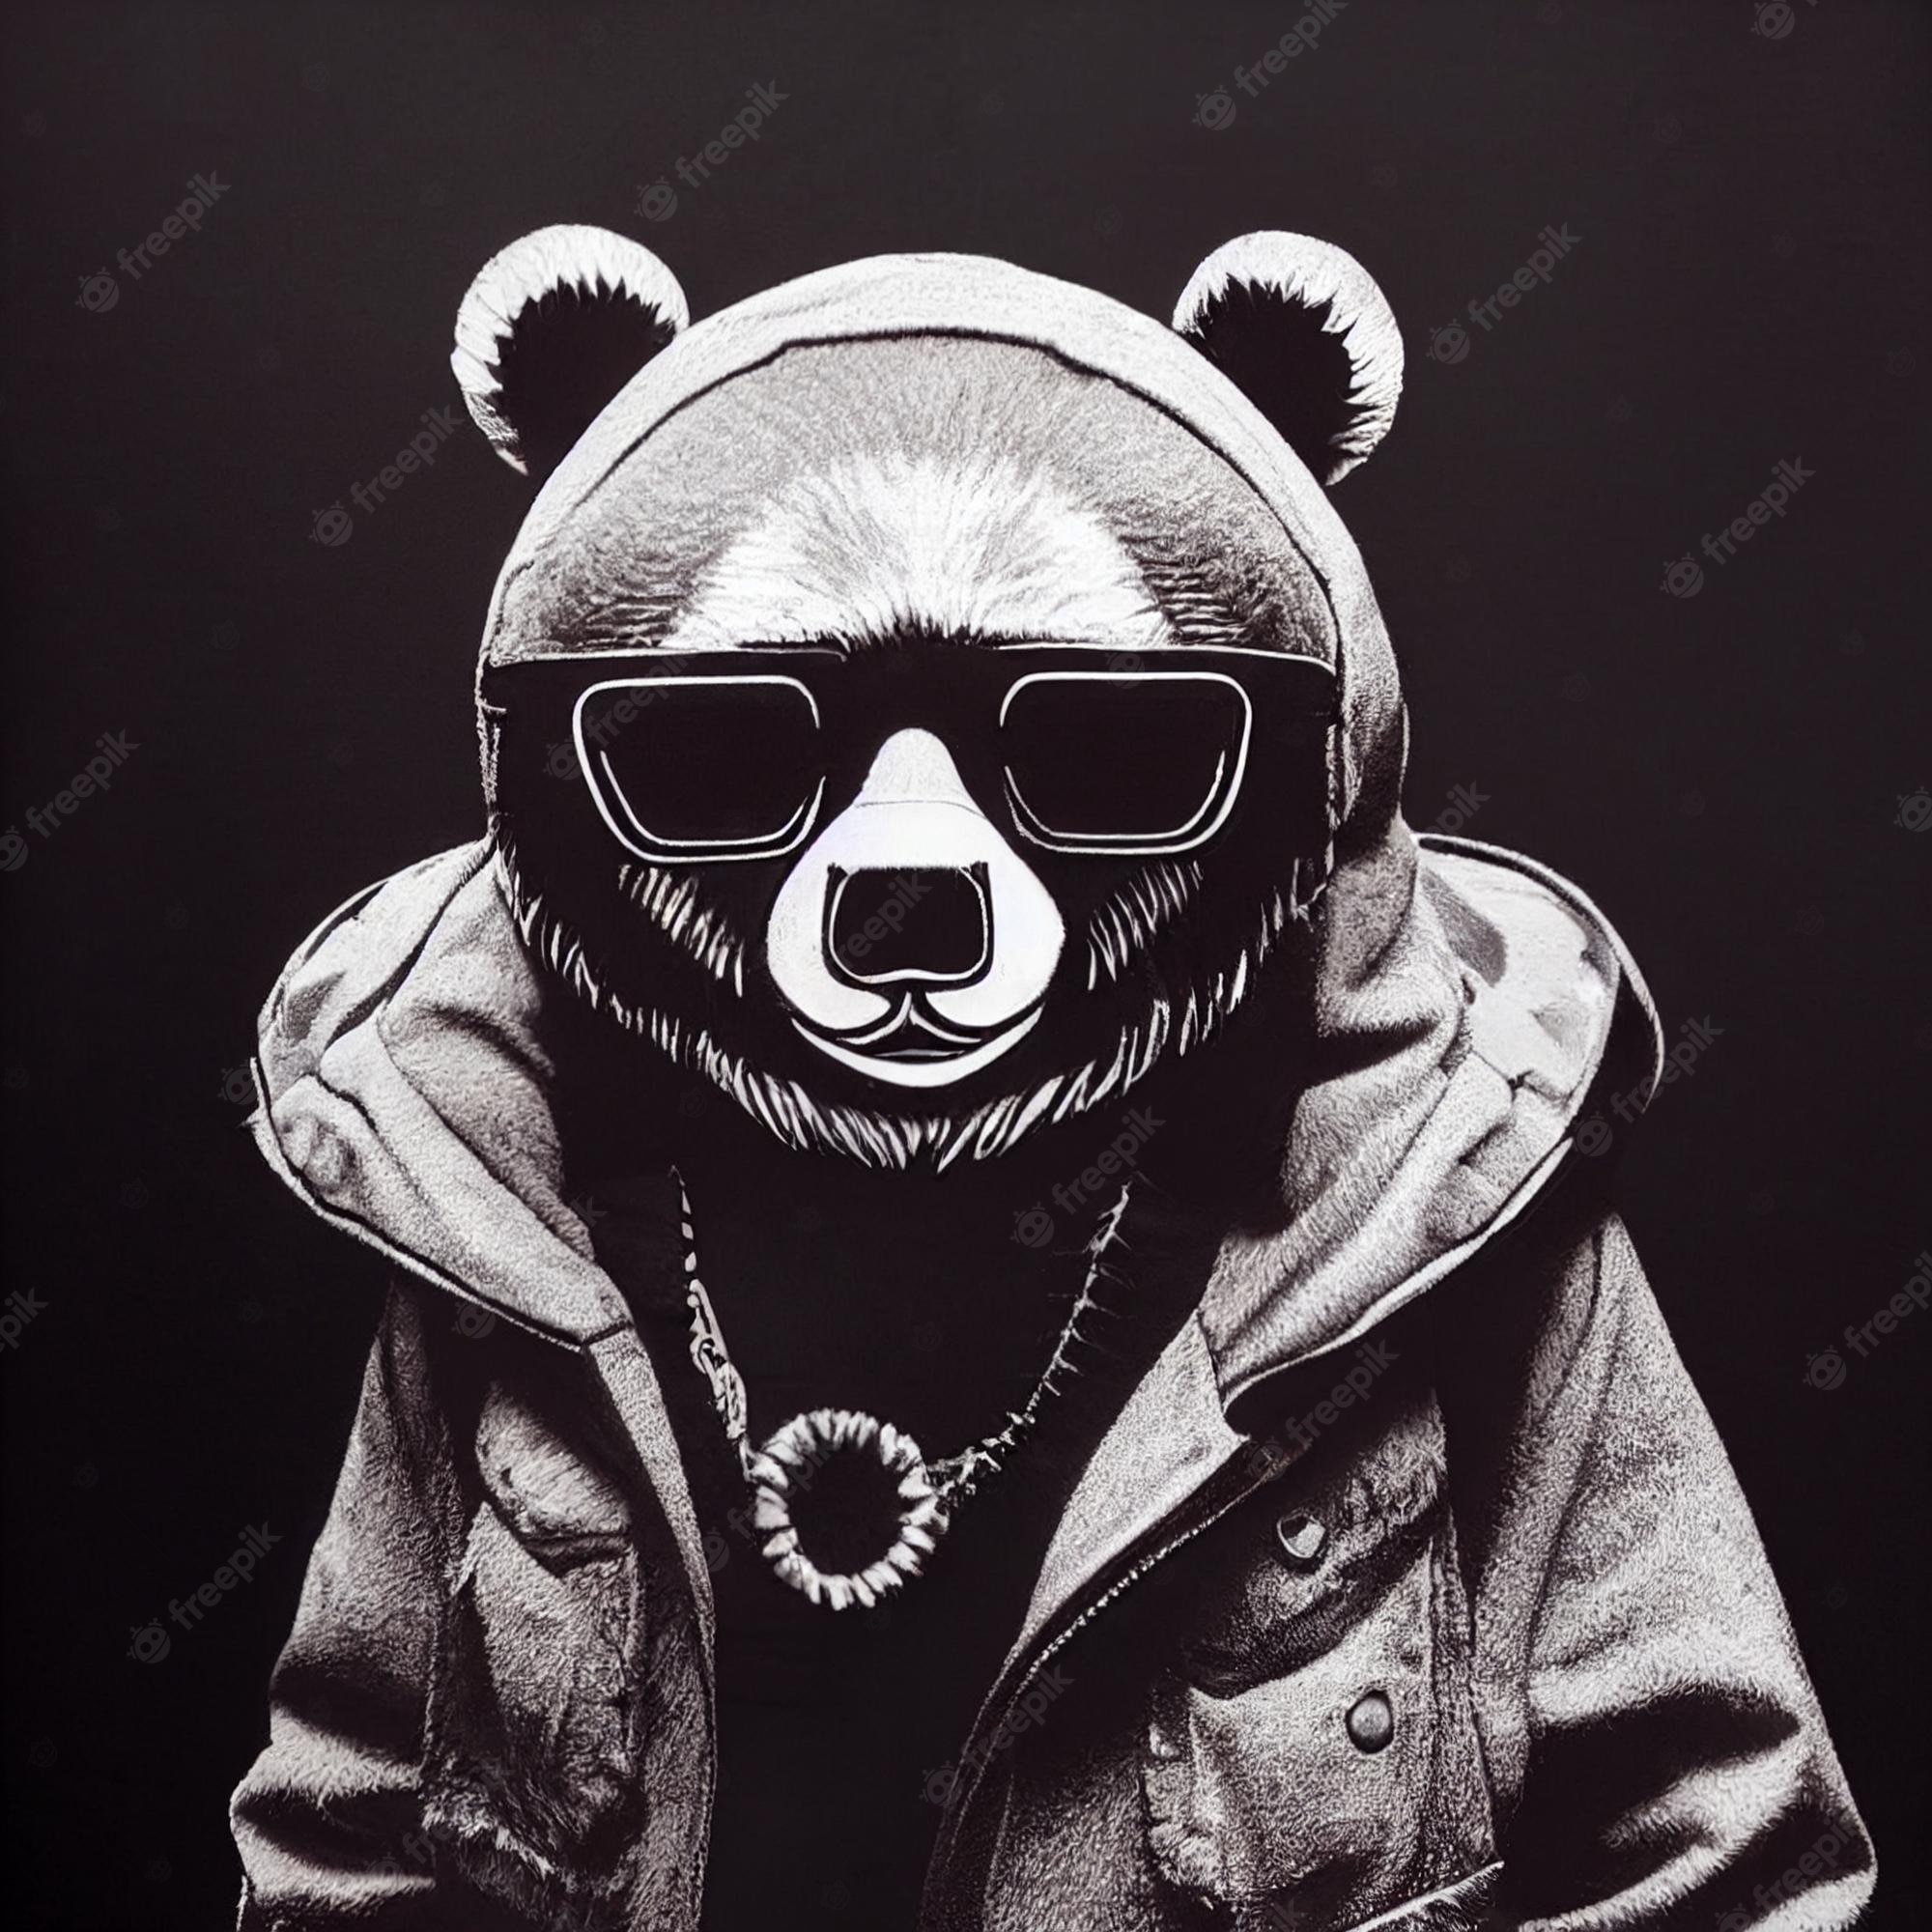 Cool Bears Image